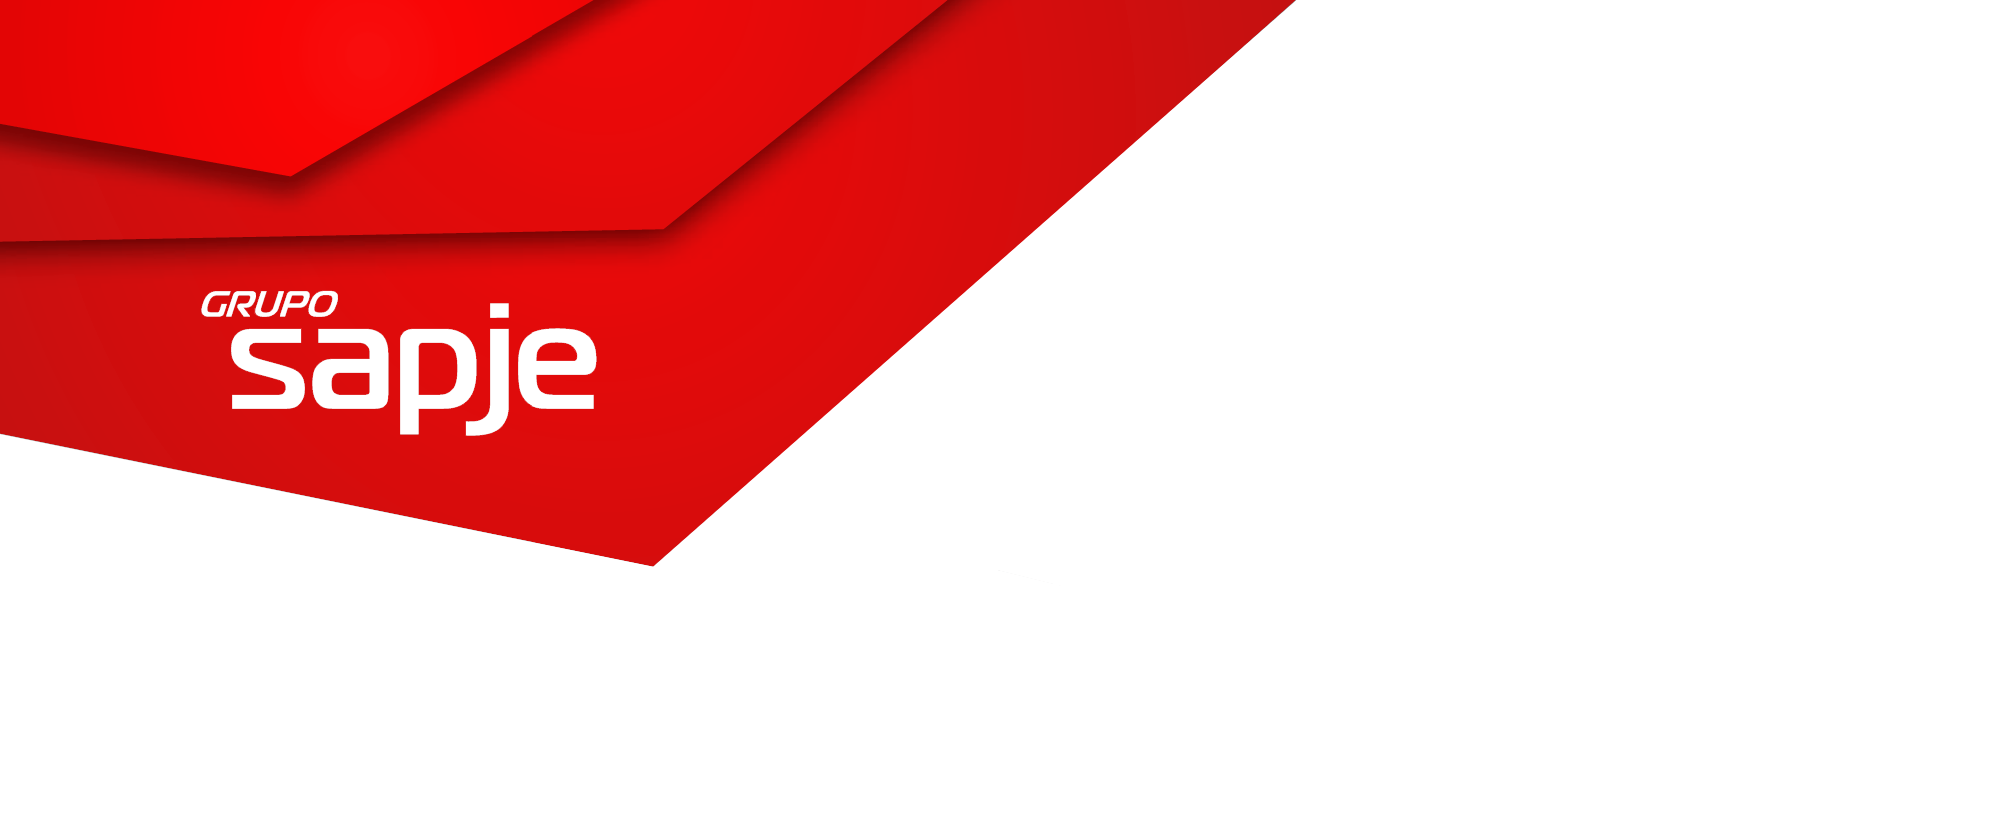 Cabecera con logo del grupo SAPJE rojo ruby